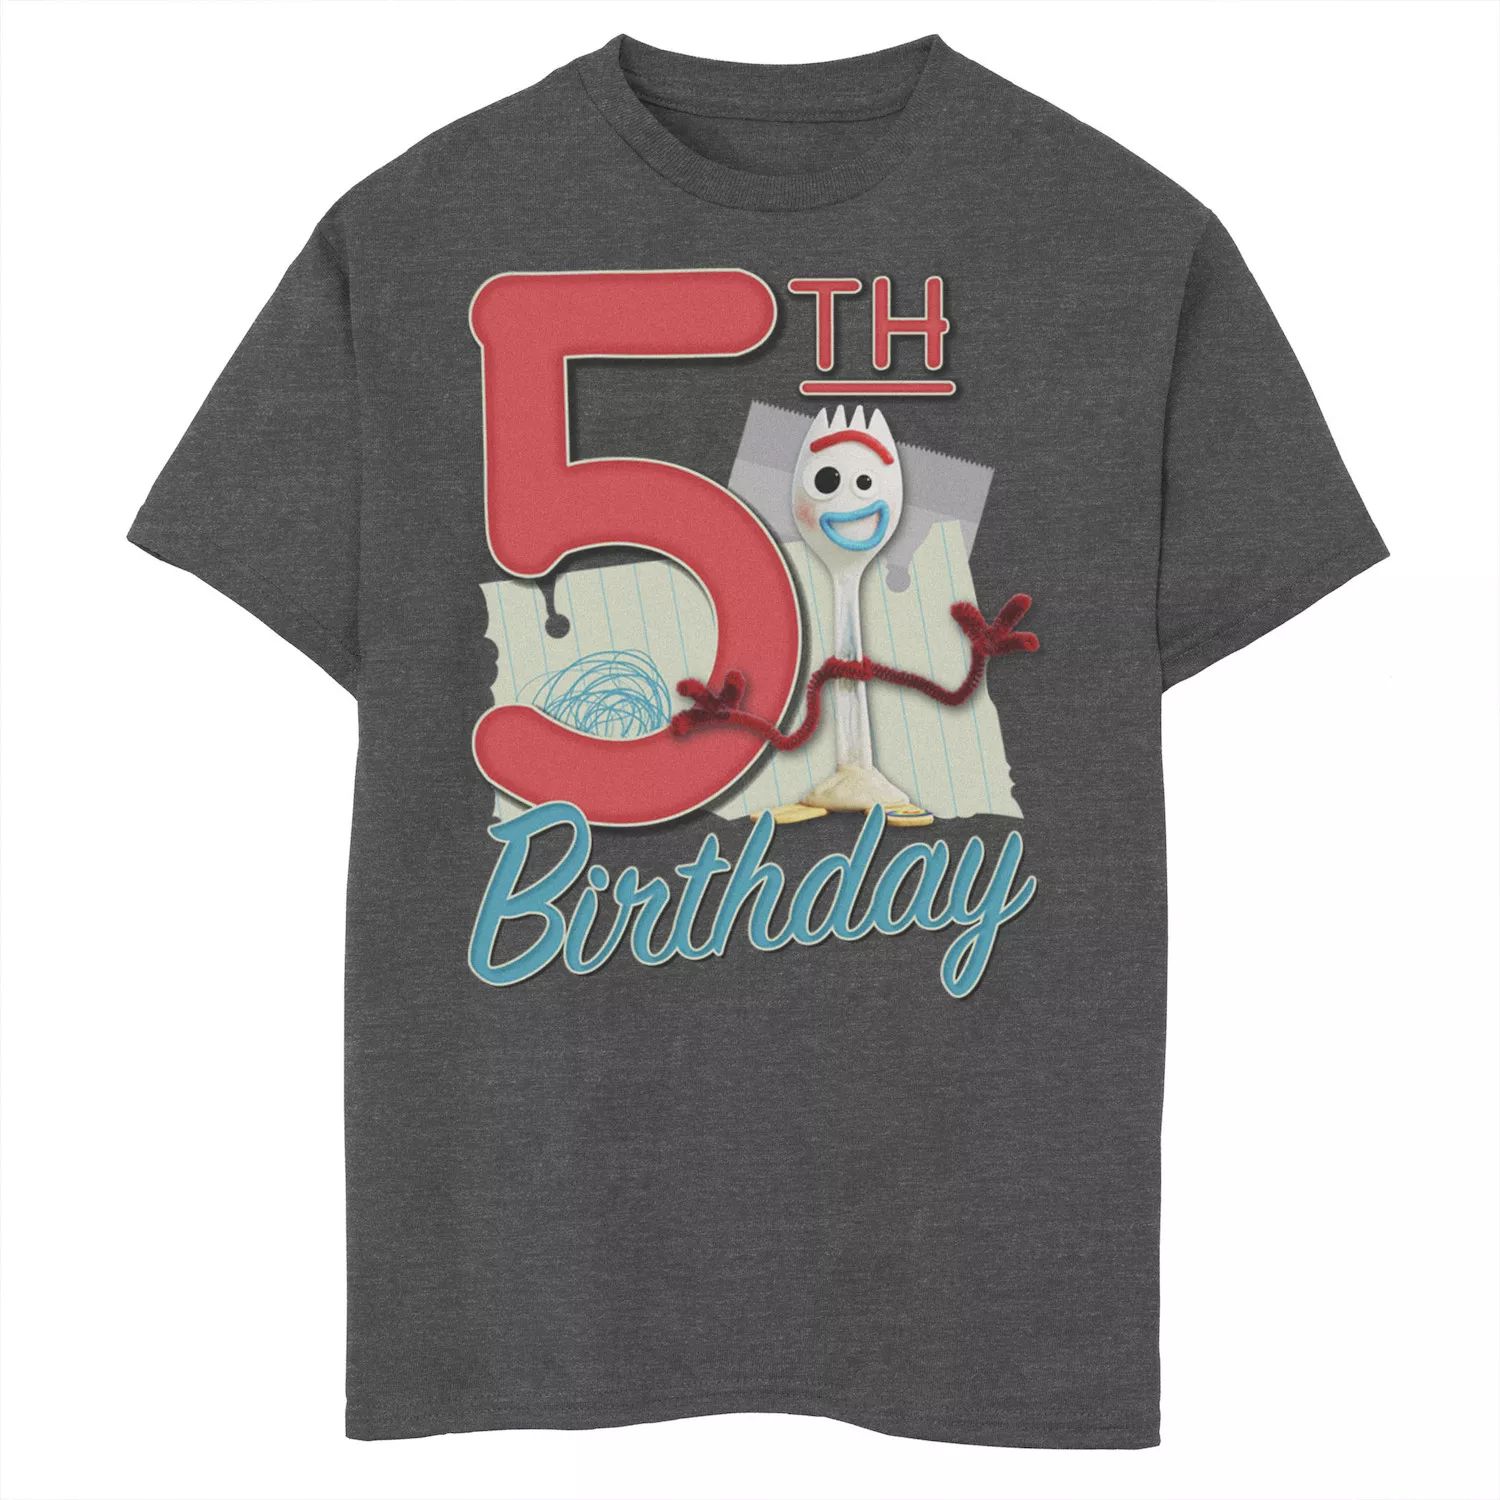 Футболка Forky с рисунком «История игрушек 4» для мальчиков 8–20 лет Disney/Pixar Disney / Pixar футболка forky с рисунком на 3 й день рождения для мальчиков 8–20 лет disney pixar история игрушек 4 disney pixar